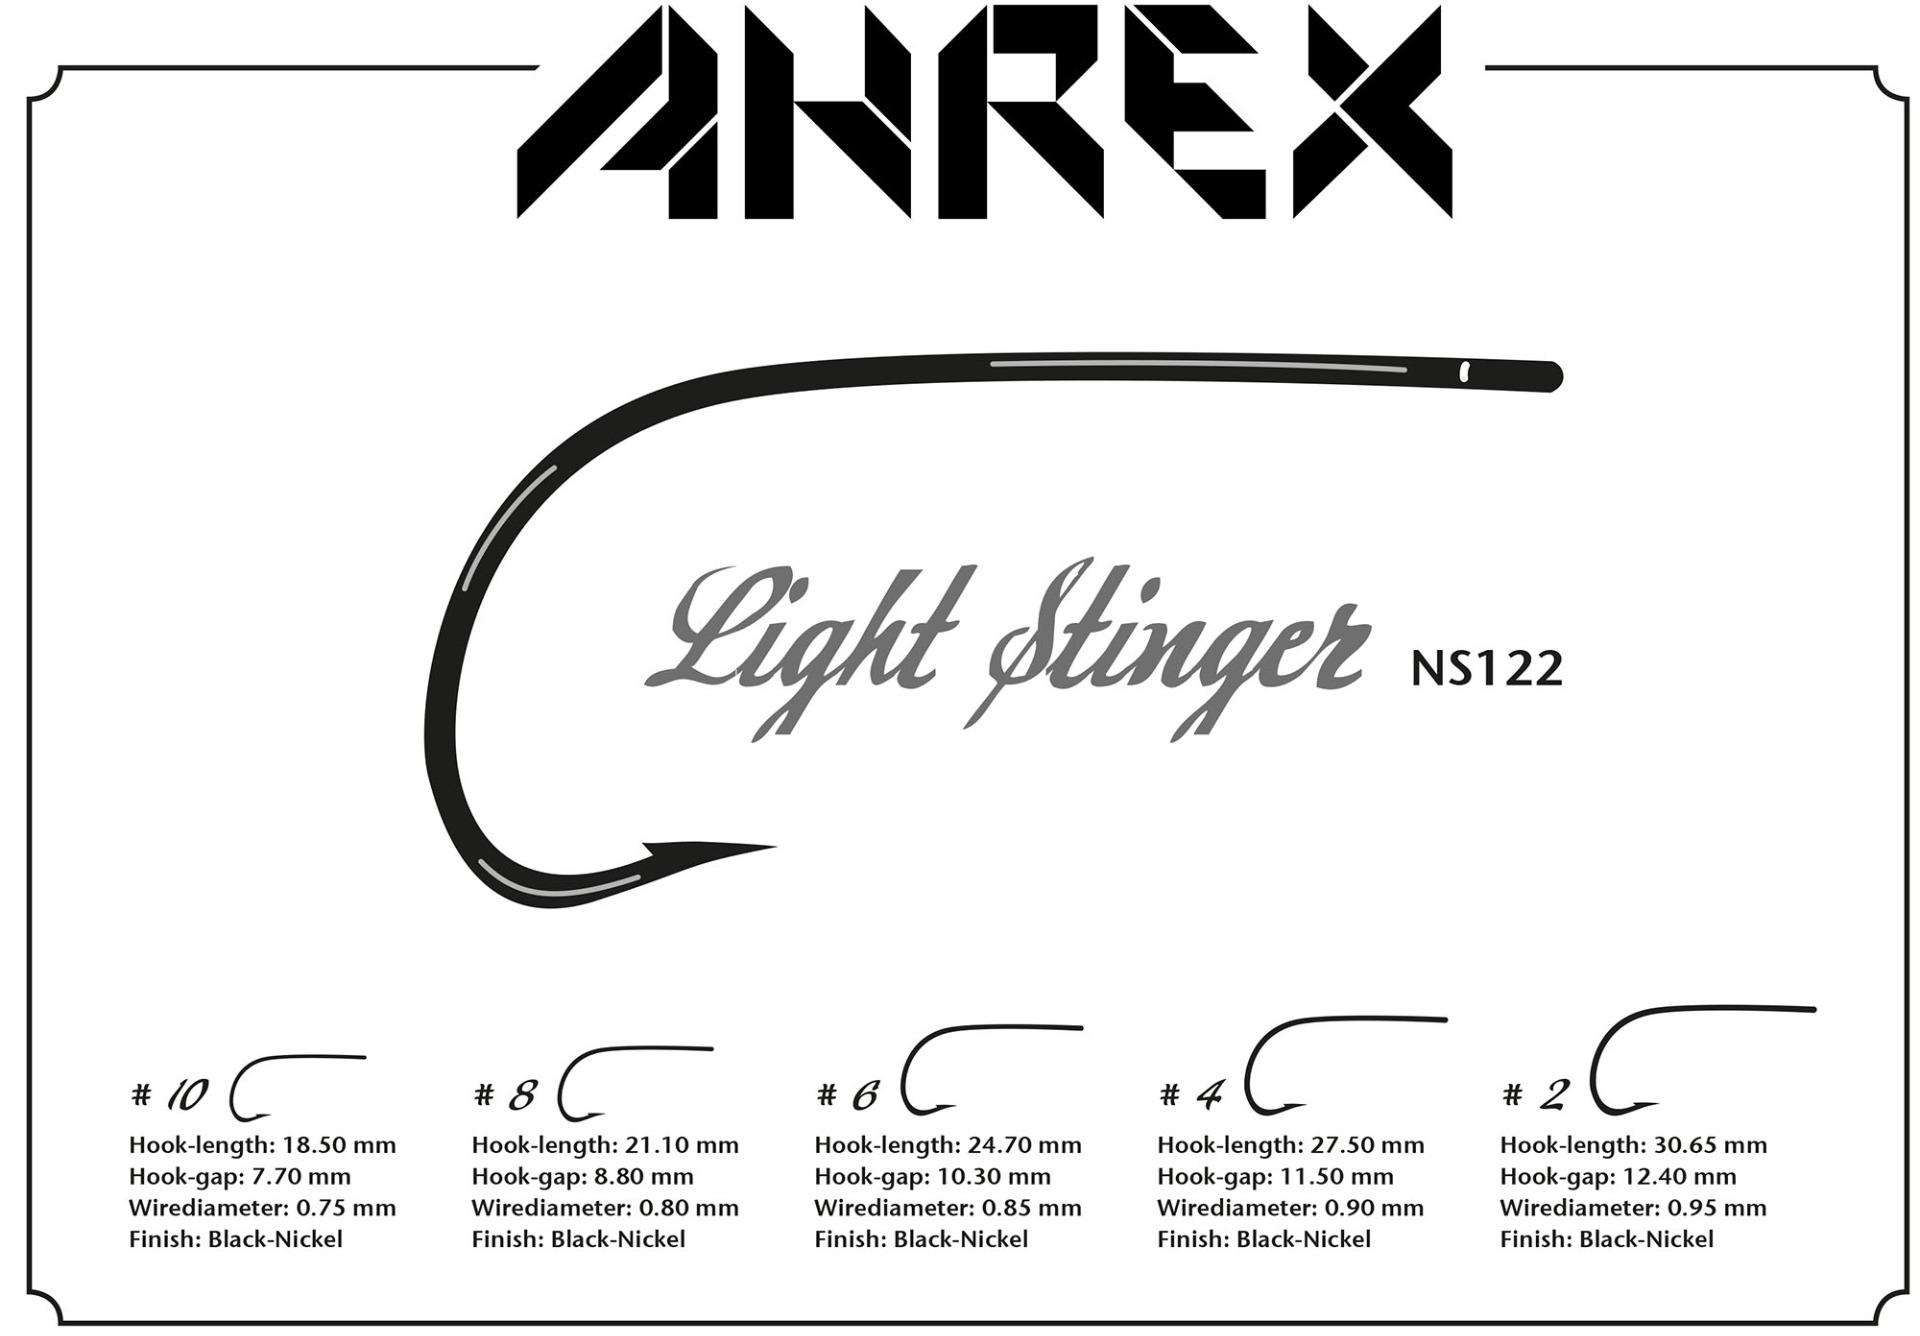 Ahrex Light Stinger #2